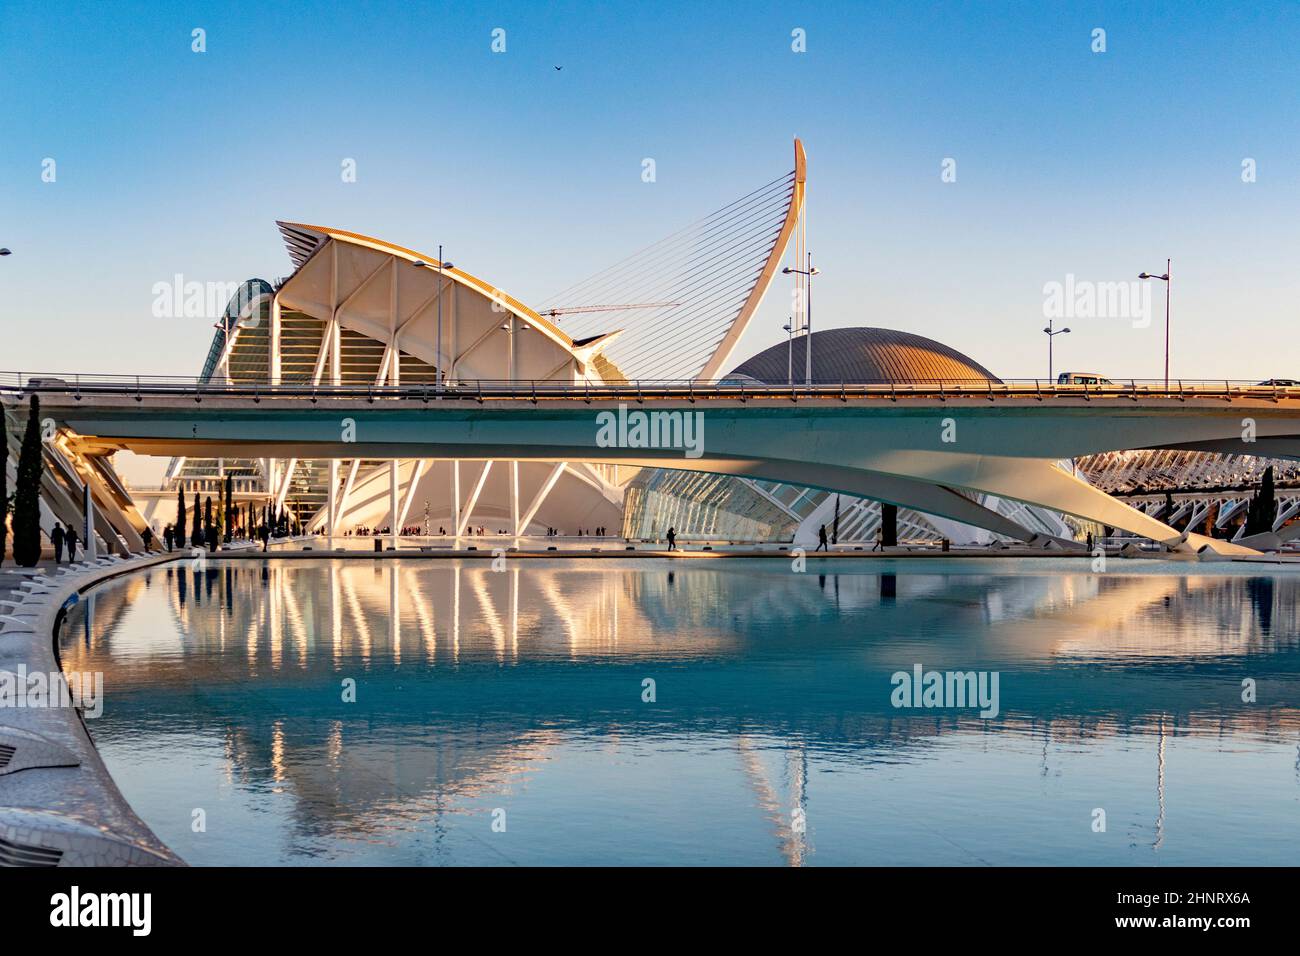 Città moderna punto di riferimento della città di Valencia - il complesso parco Ciudad de las Artes y las Ciencias, Valencia, Spagna. L´Hemisfèric (cinema IMAX Dome) e il Palau de les Arts Reina Sofia sono stati aperti nel 2000 Foto Stock